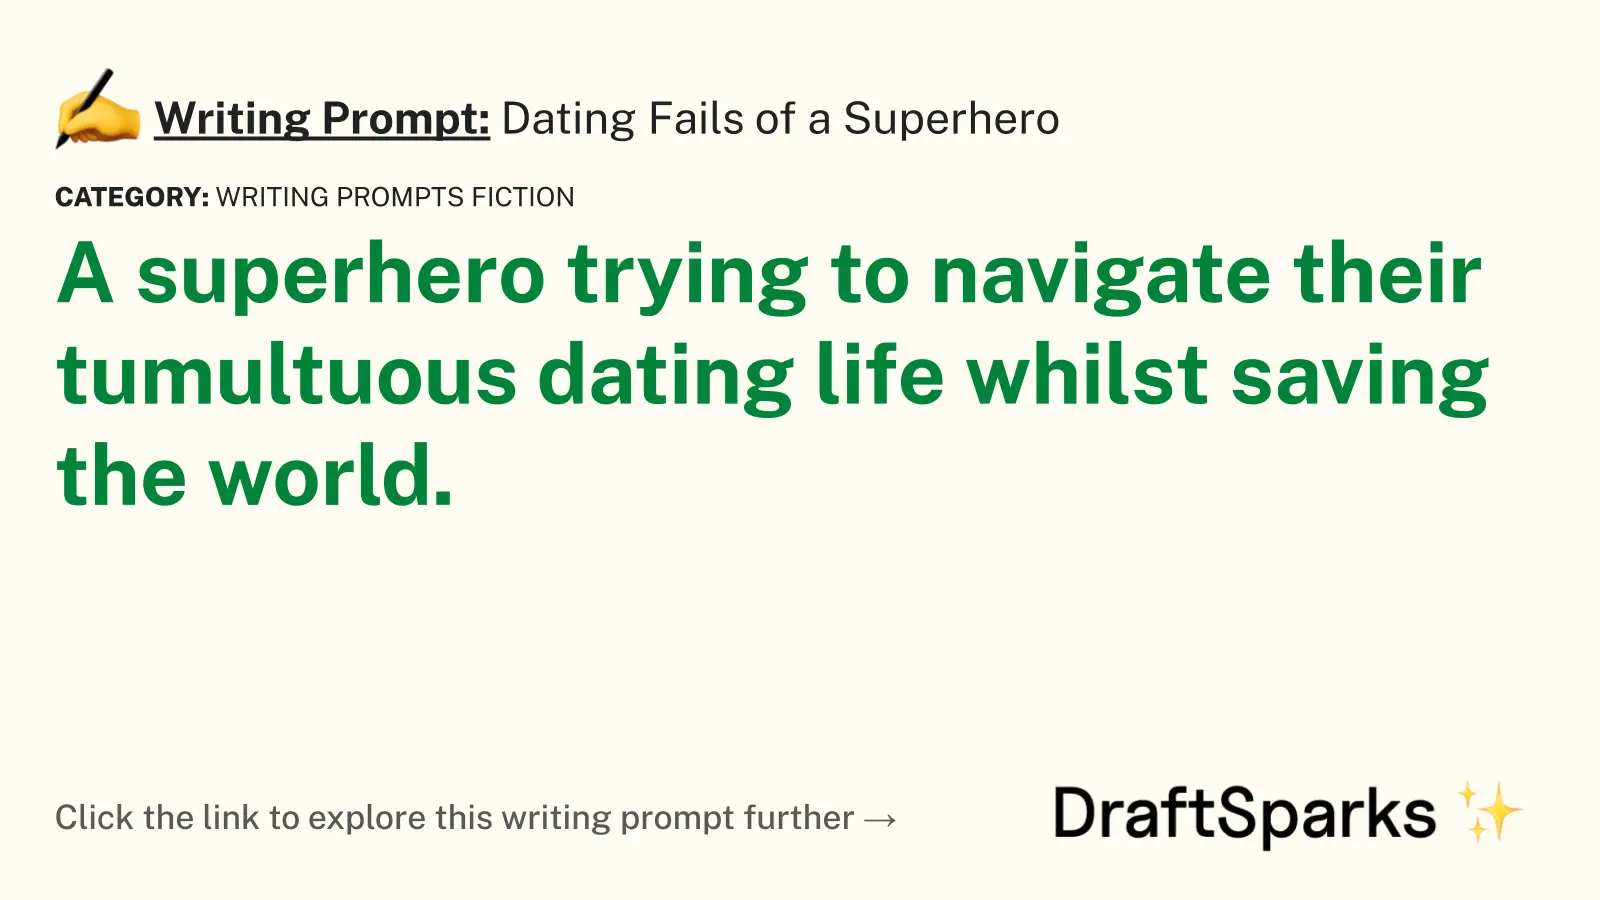 Dating Fails of a Superhero